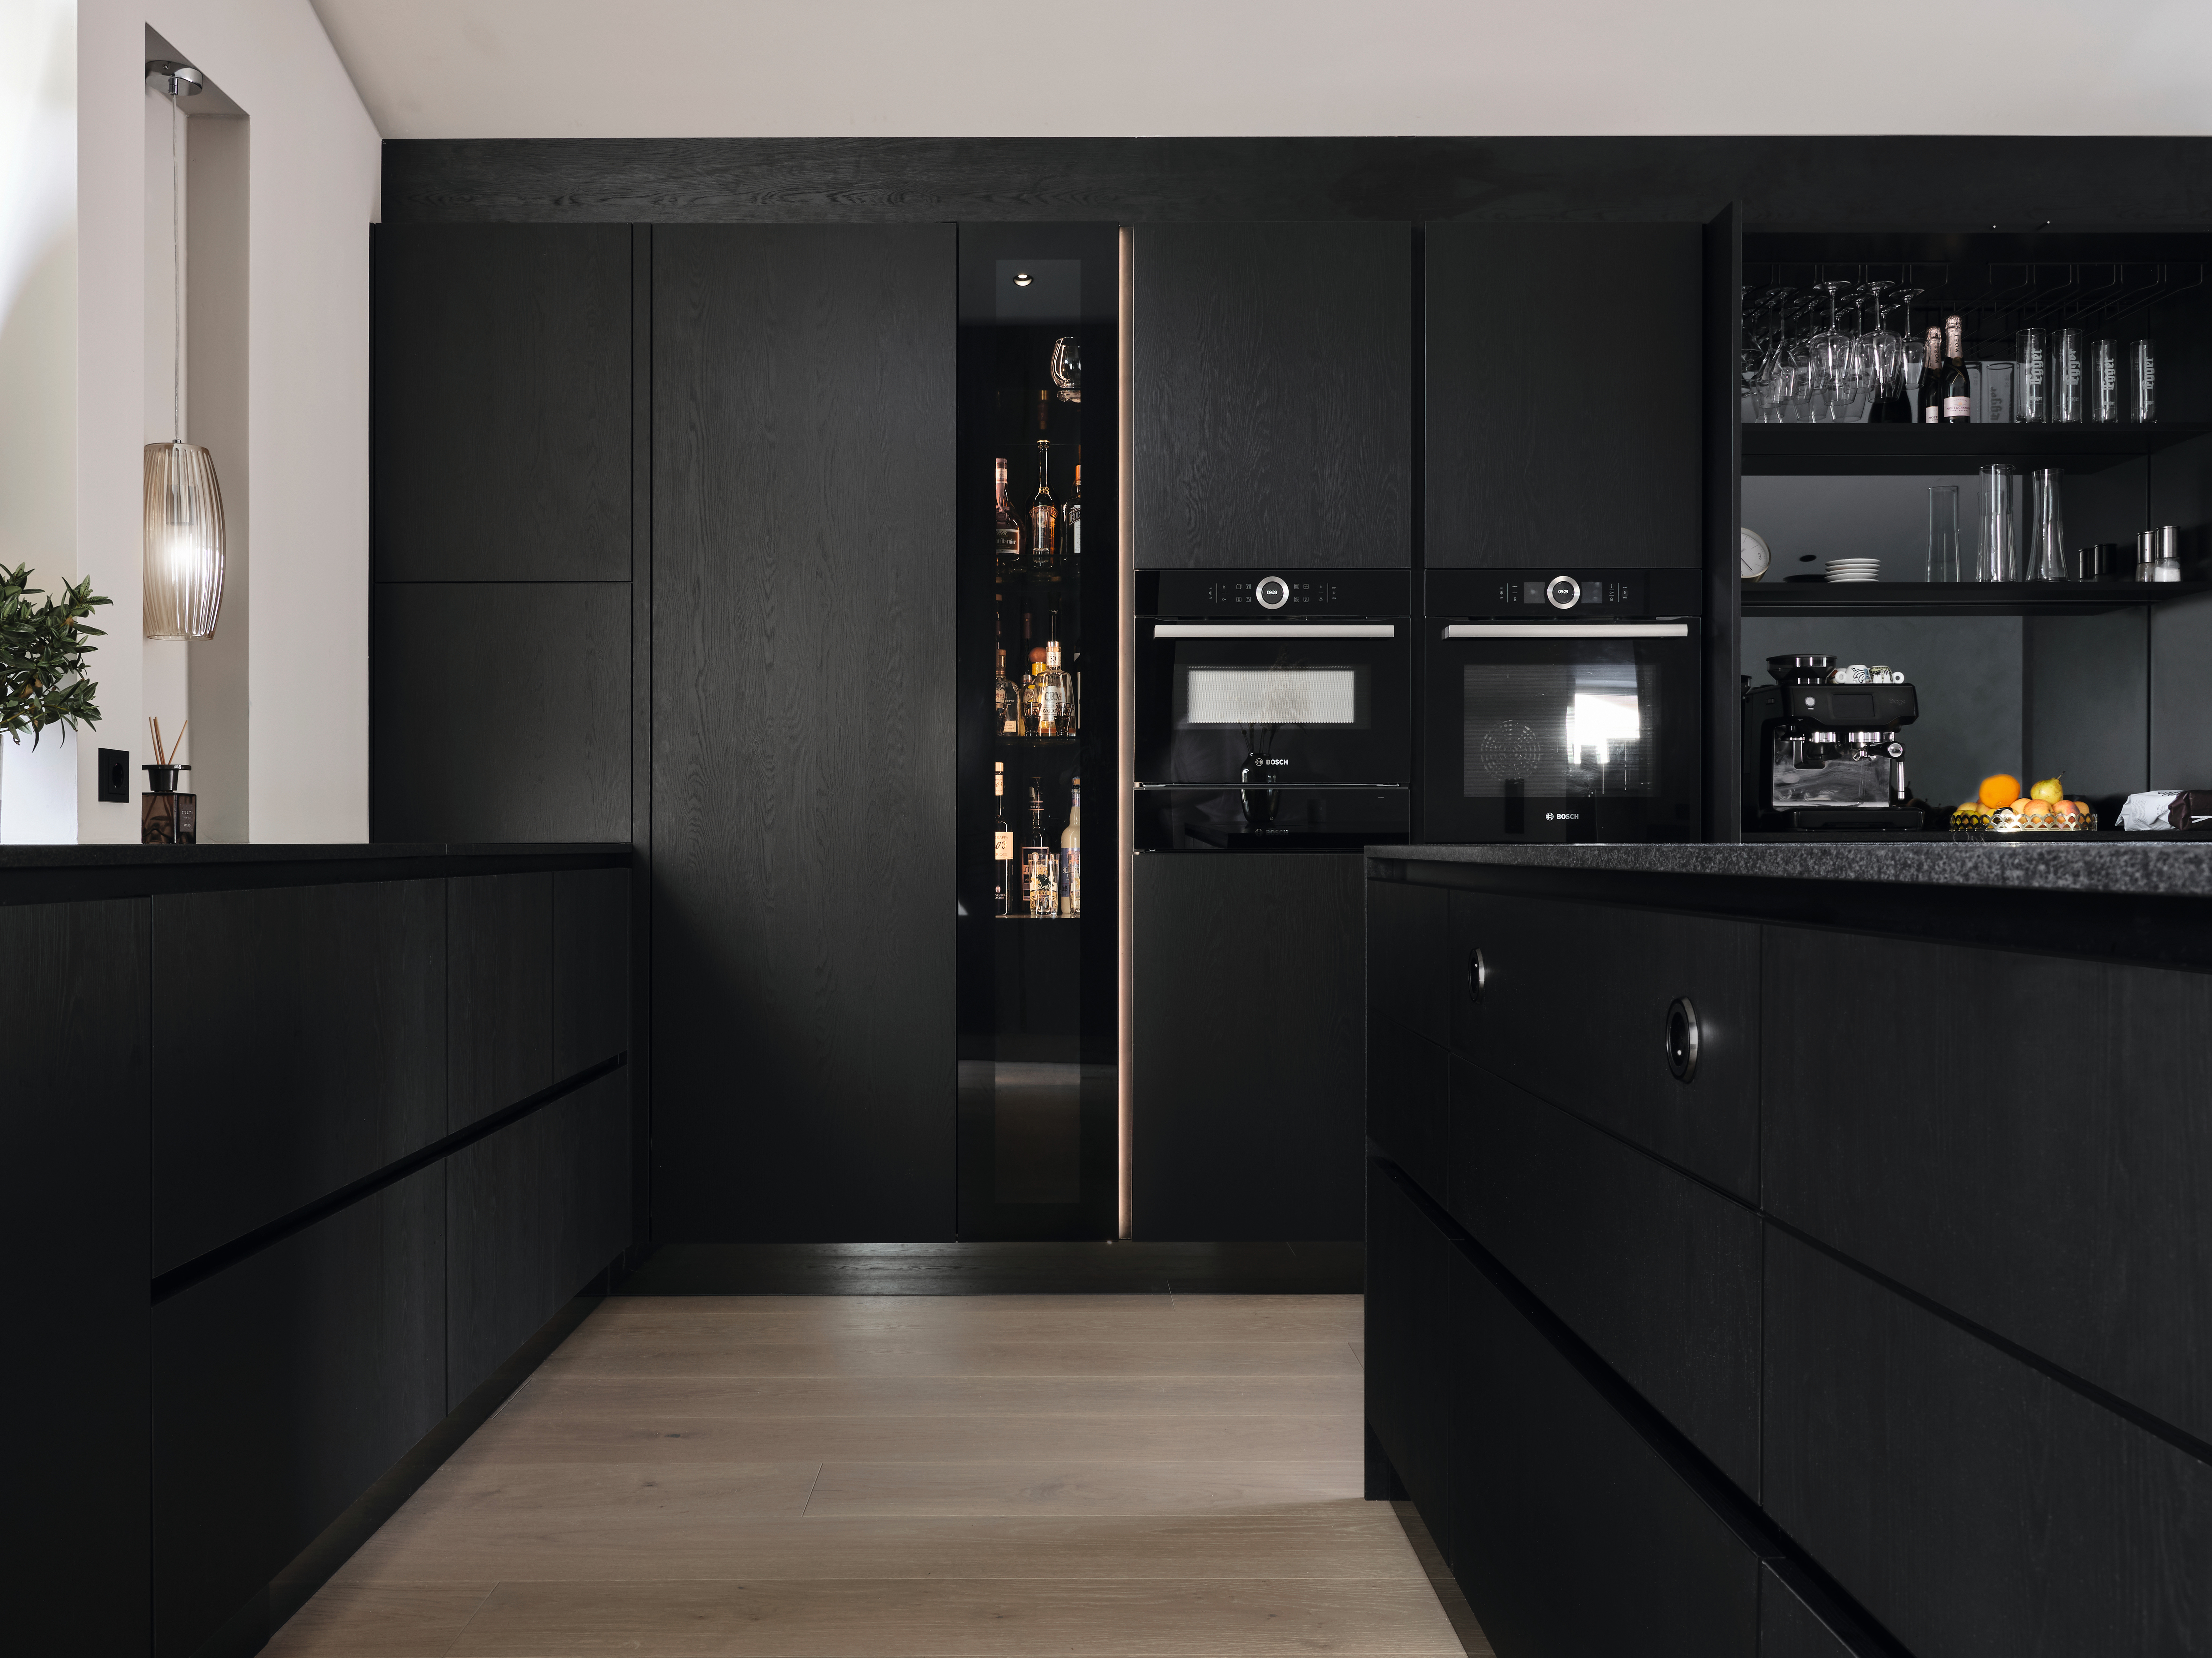 Siyah cepheler mutfağa modern bir dokunuş katar.